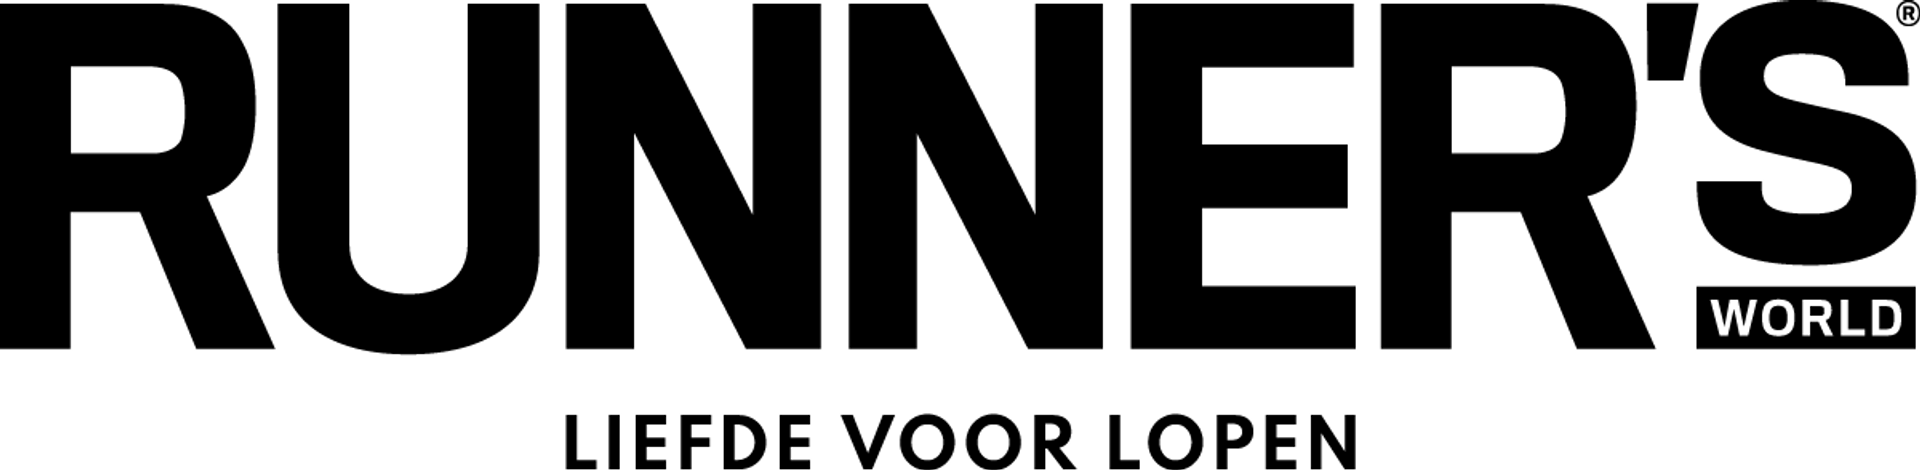 RUNNER'S WORLD logo in de folder van deze week